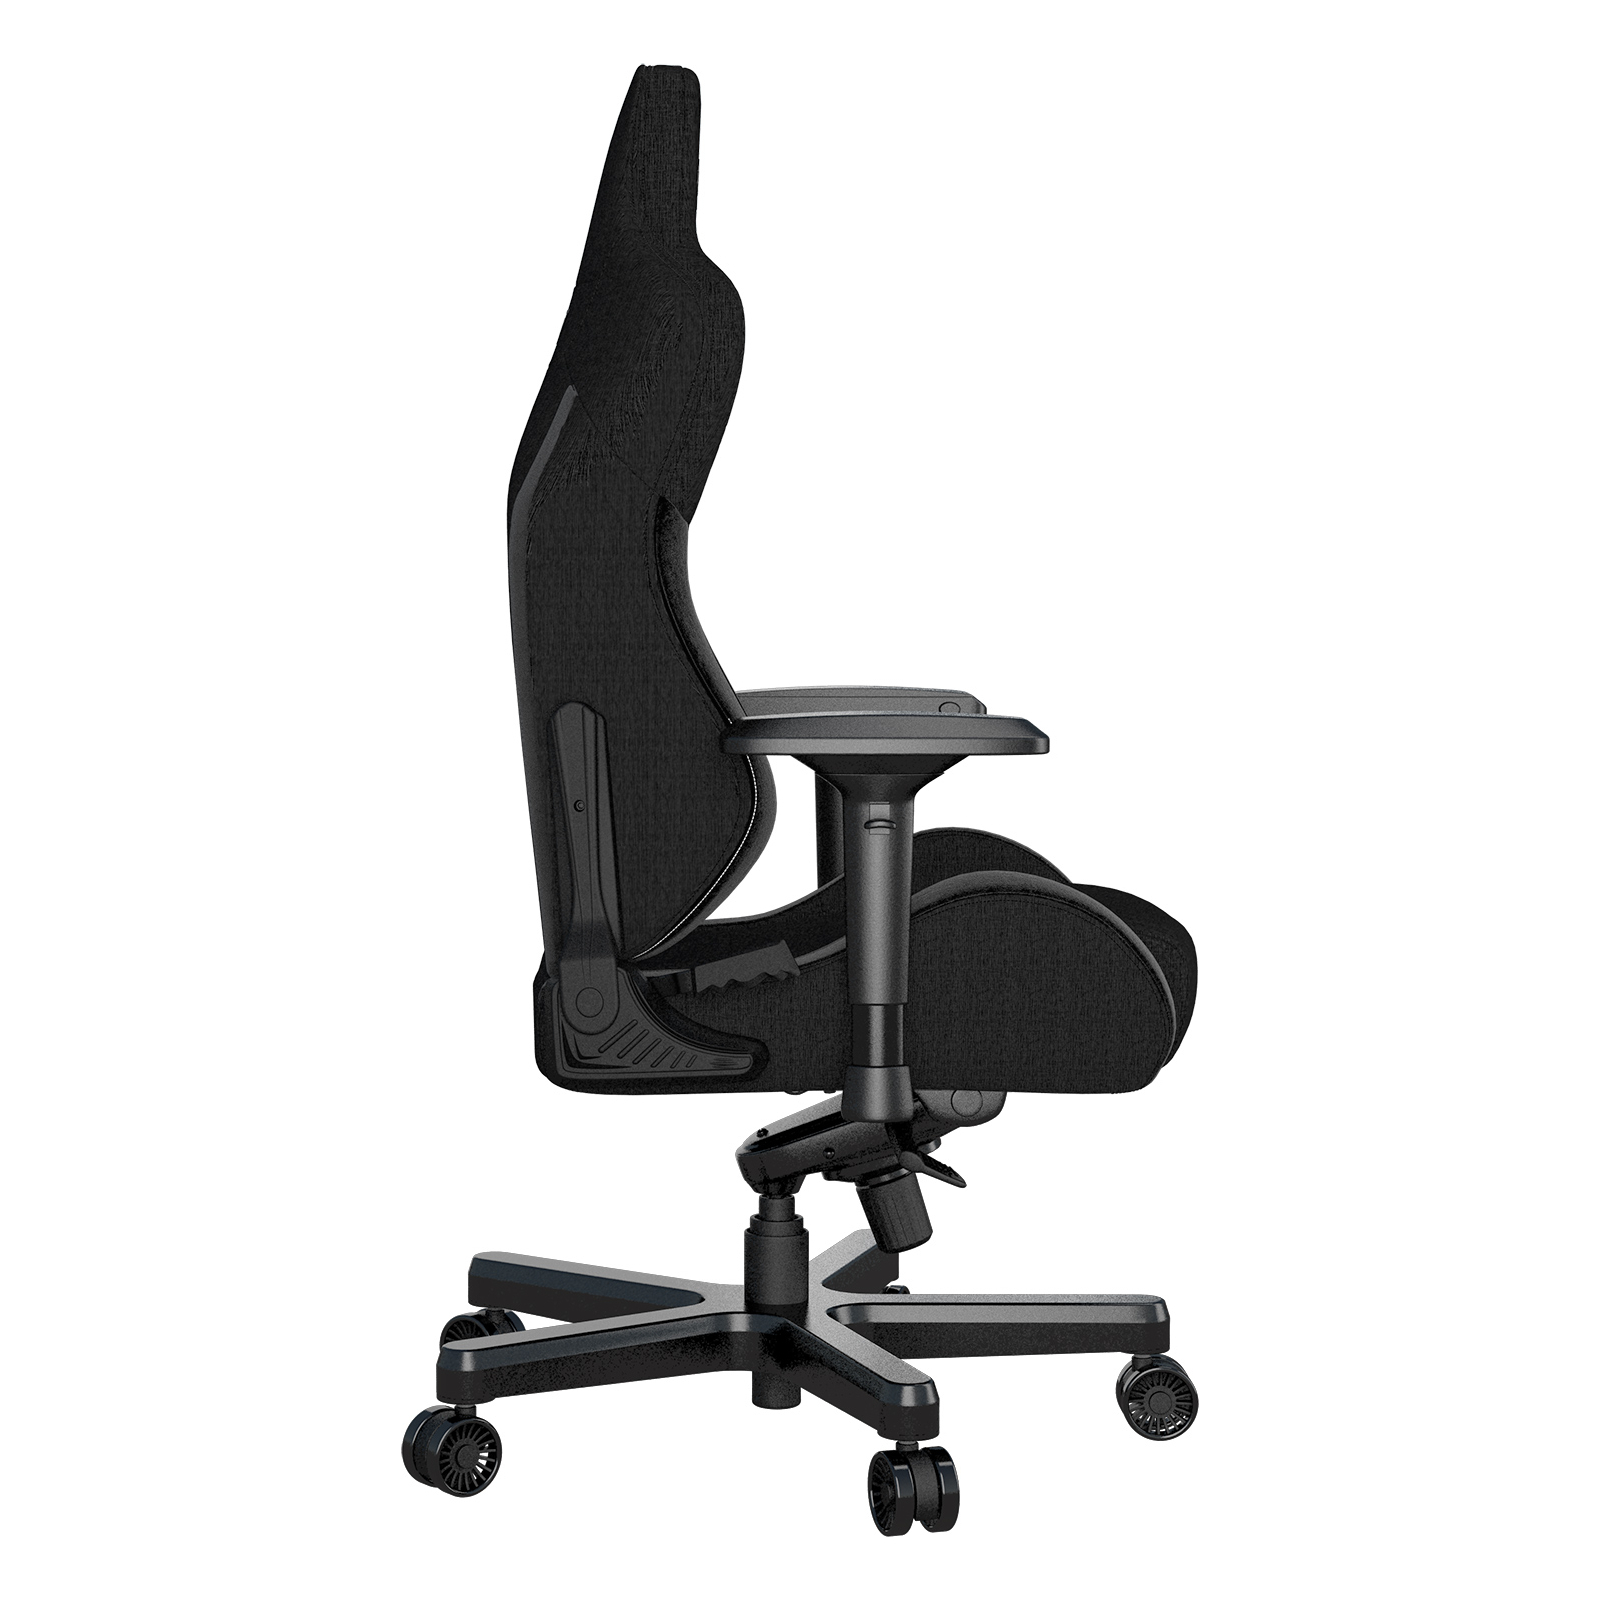 Кресло игровое Anda Seat T-Pro 2 Blue/Black Size XL (AD12XLLA-01-SB-F) изображение 5